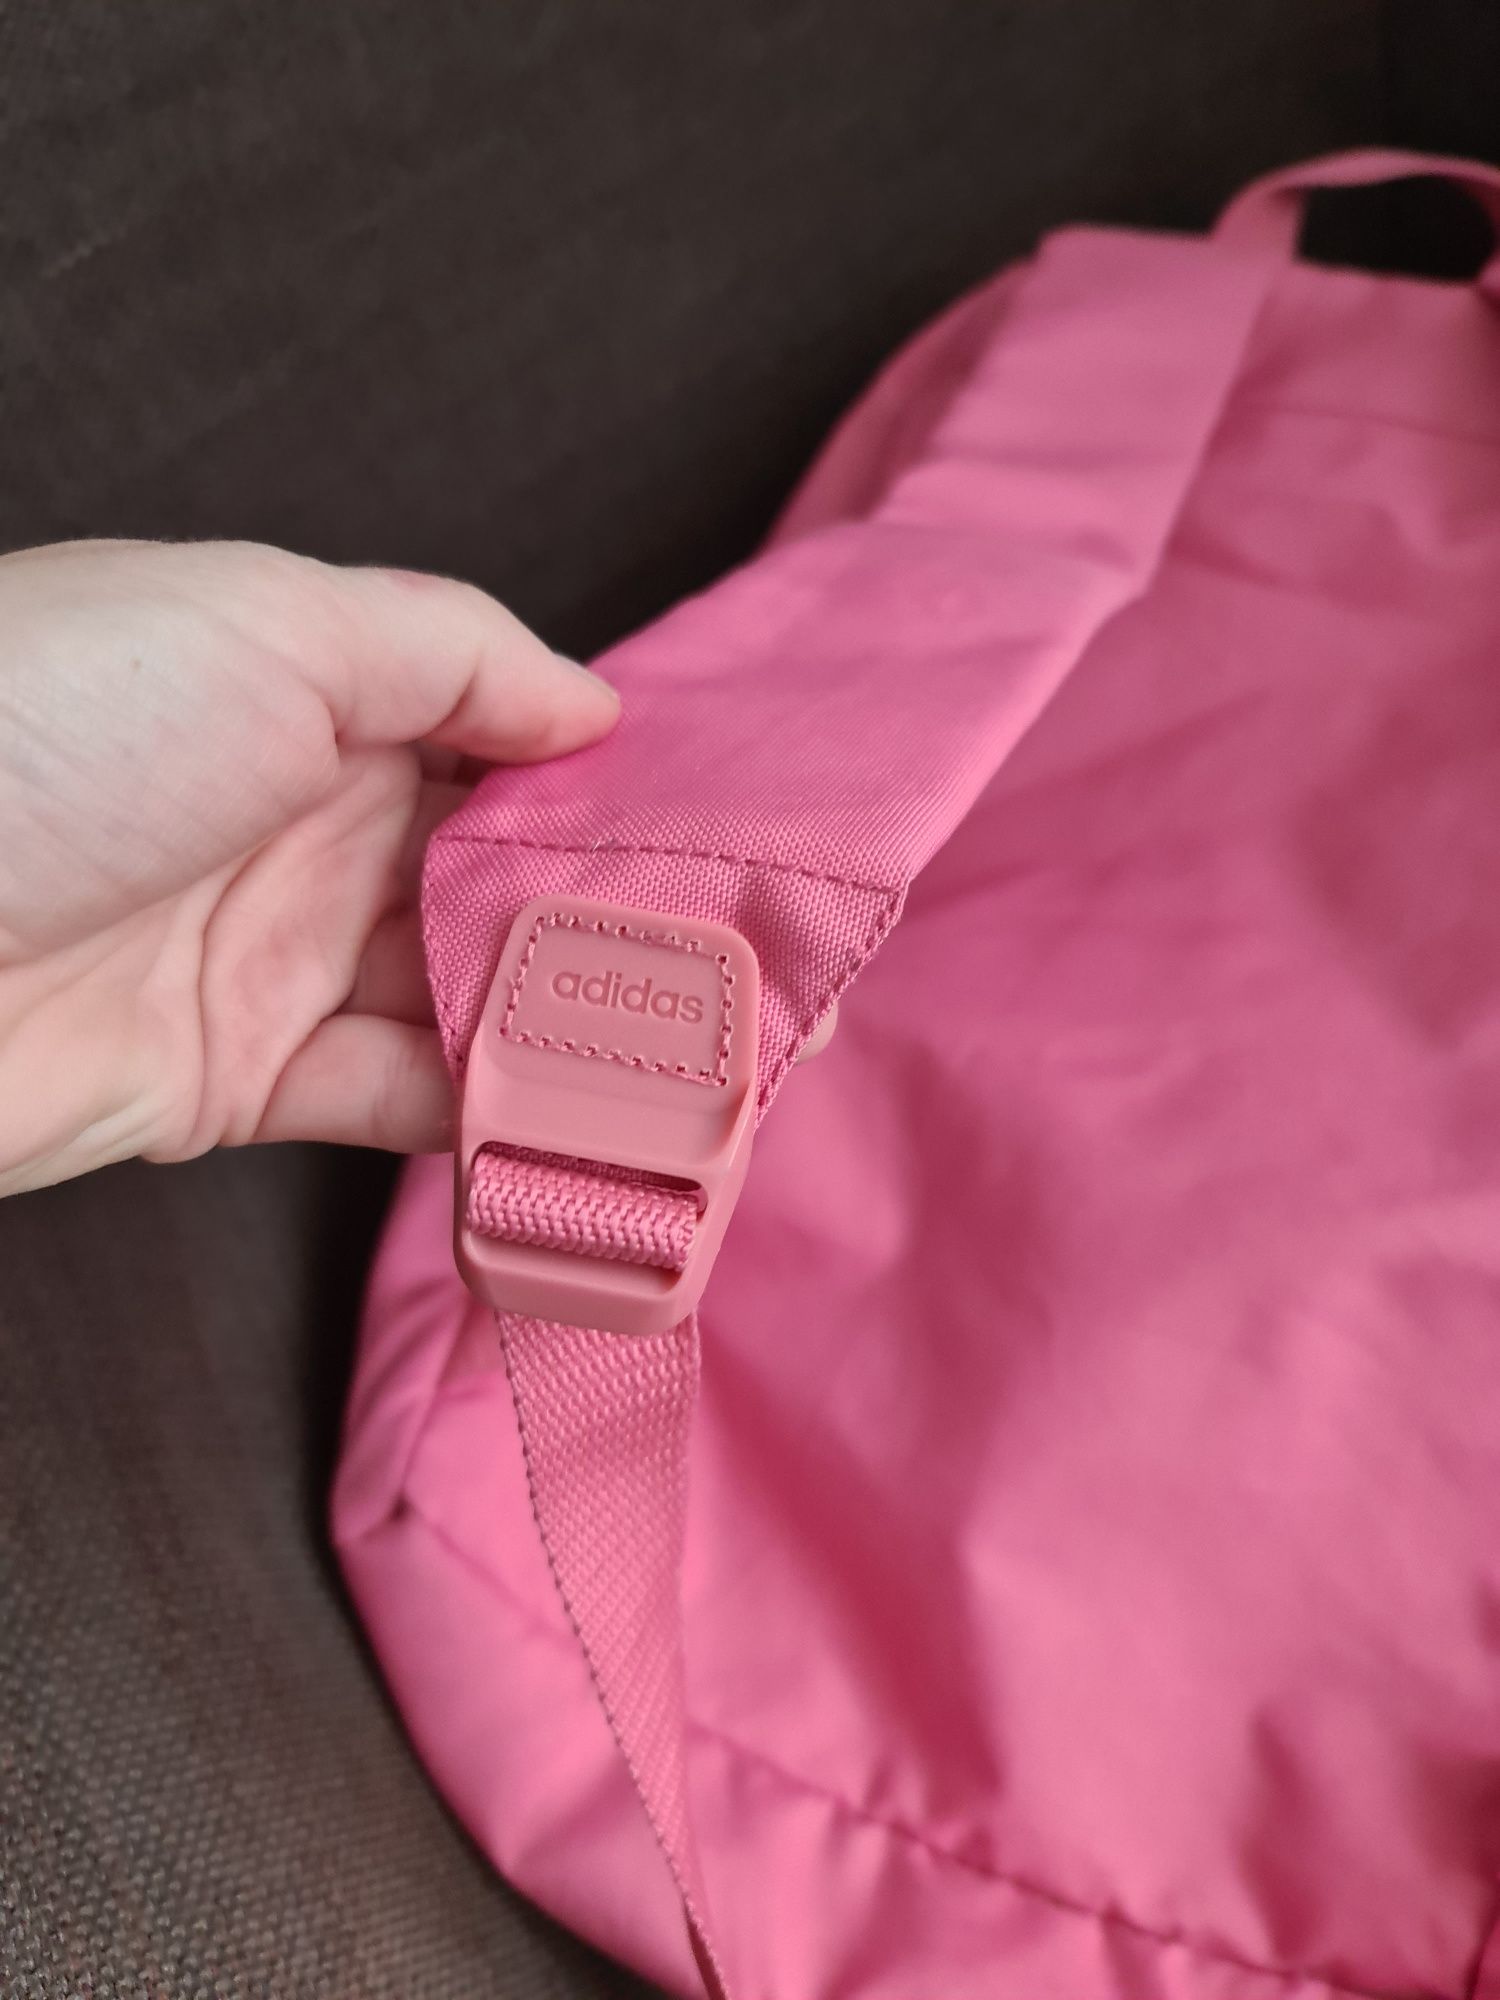 Adidas plecak różowy